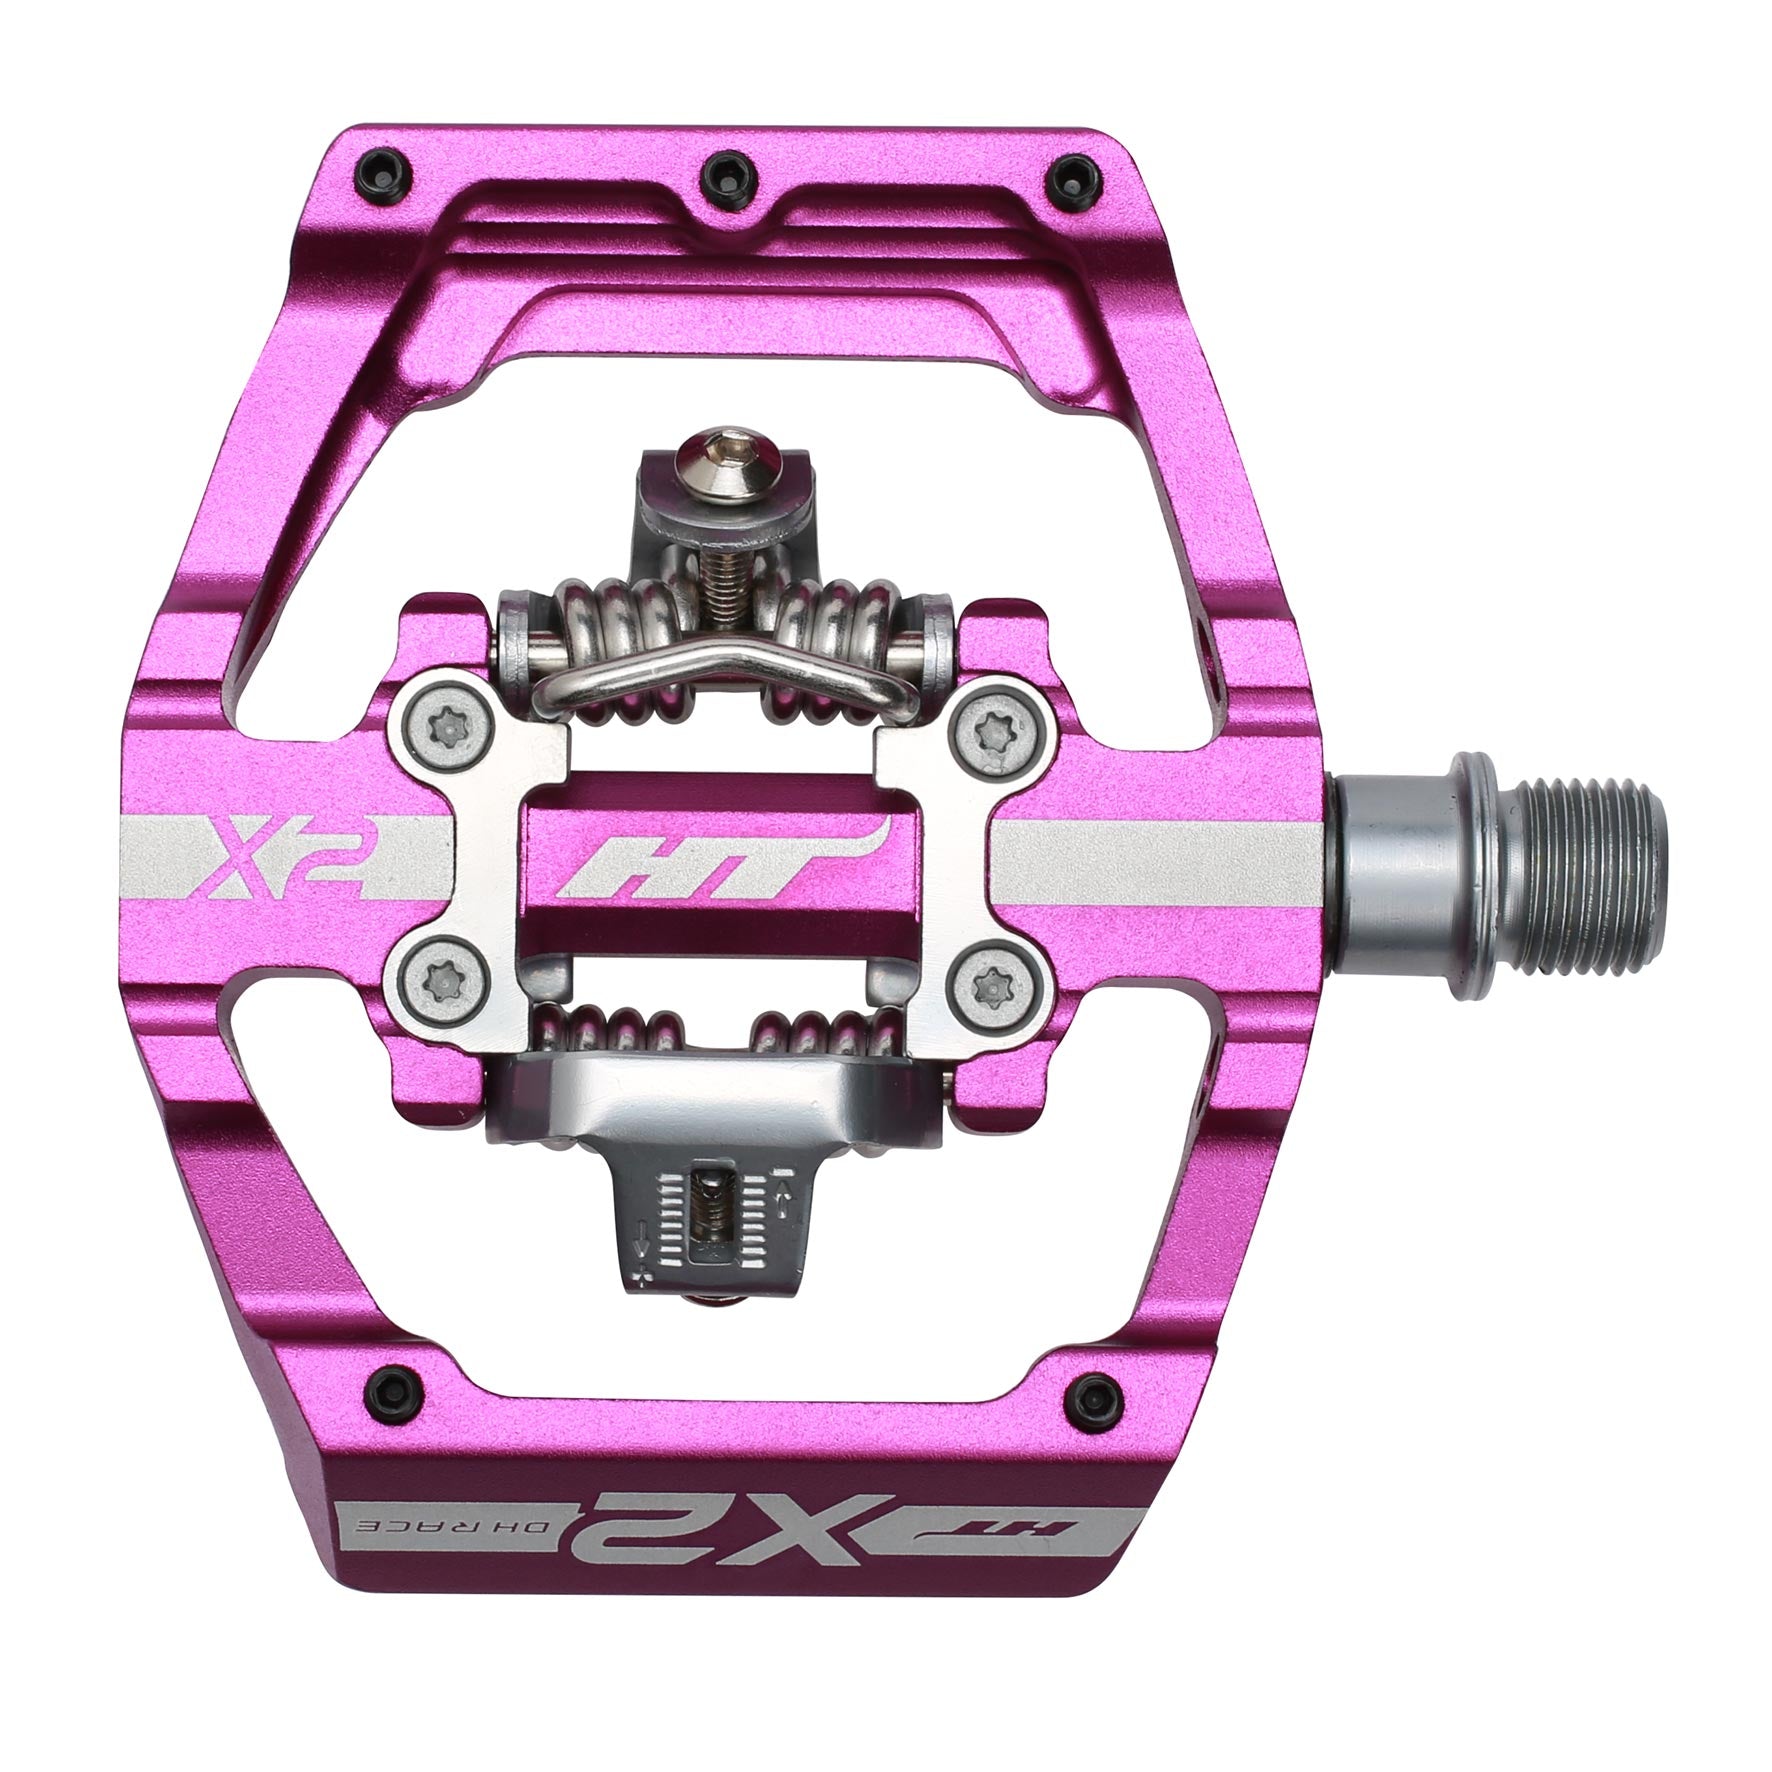 Ht X2 Pedals Alloy / CNC CRMO - Purple